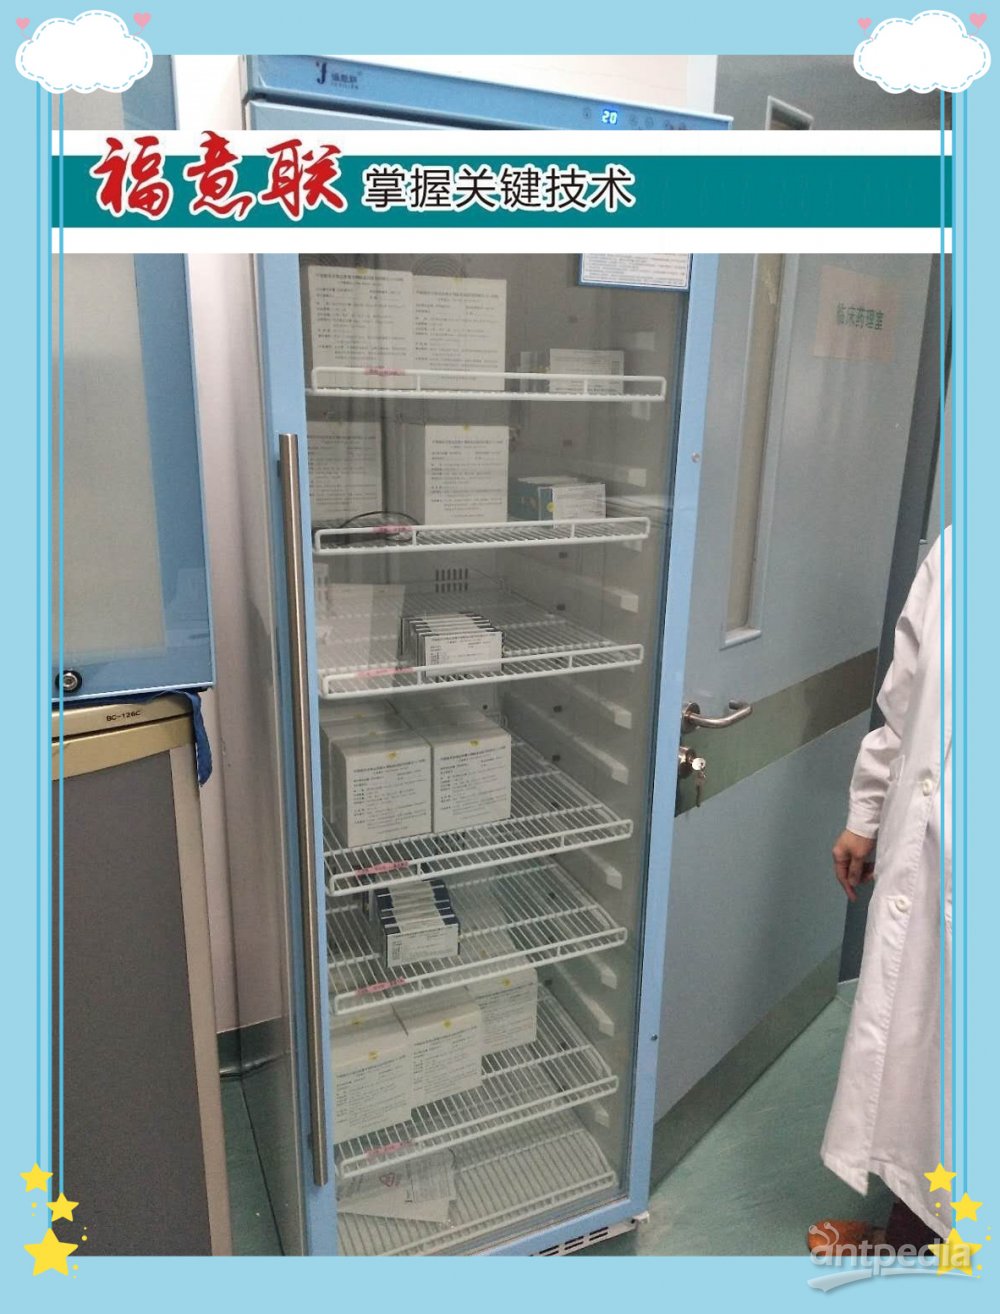 透析患者术中液保暖箱FYL-YS-281L